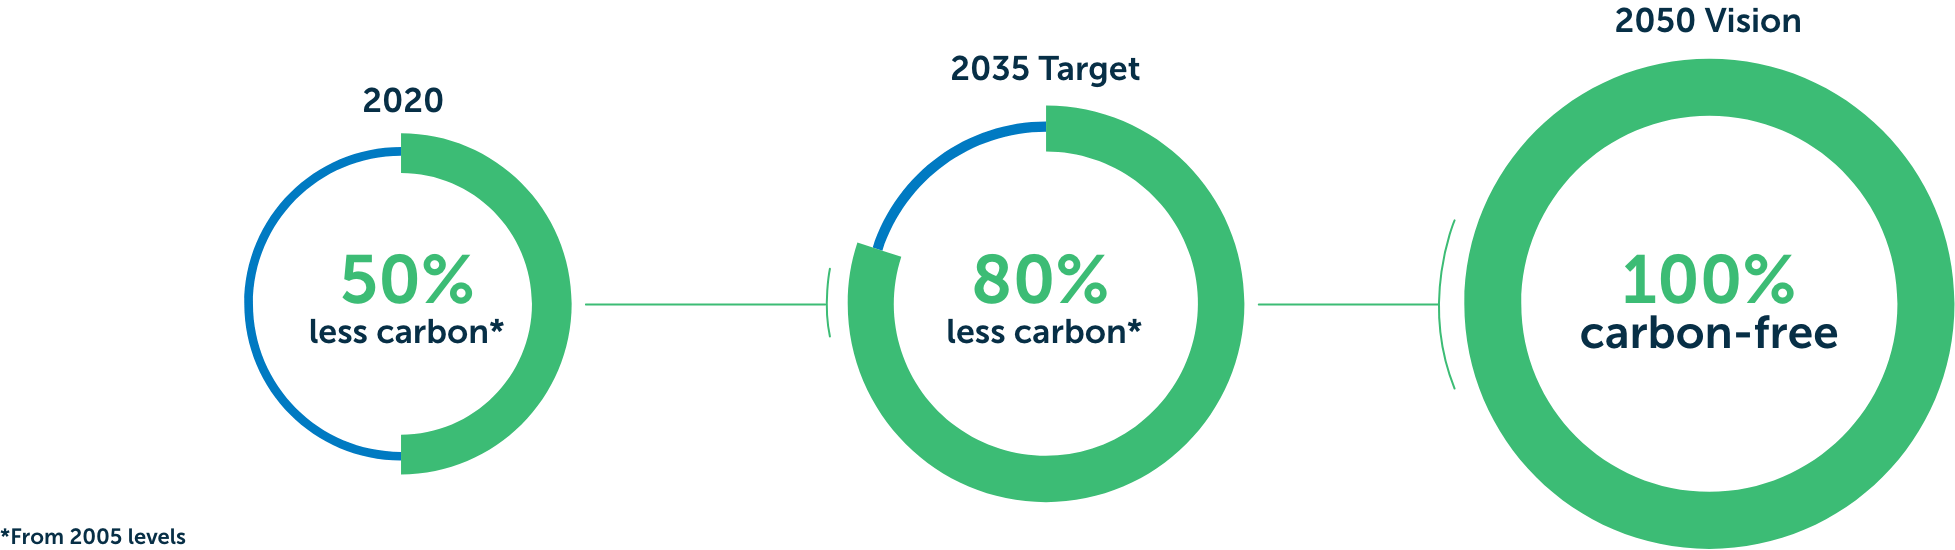 2020年，减少50%的碳排放. 2035年的目标是减少80%的碳排放. 2050年的愿景，100%无碳. 从2005年起达到州法律要求的水平.